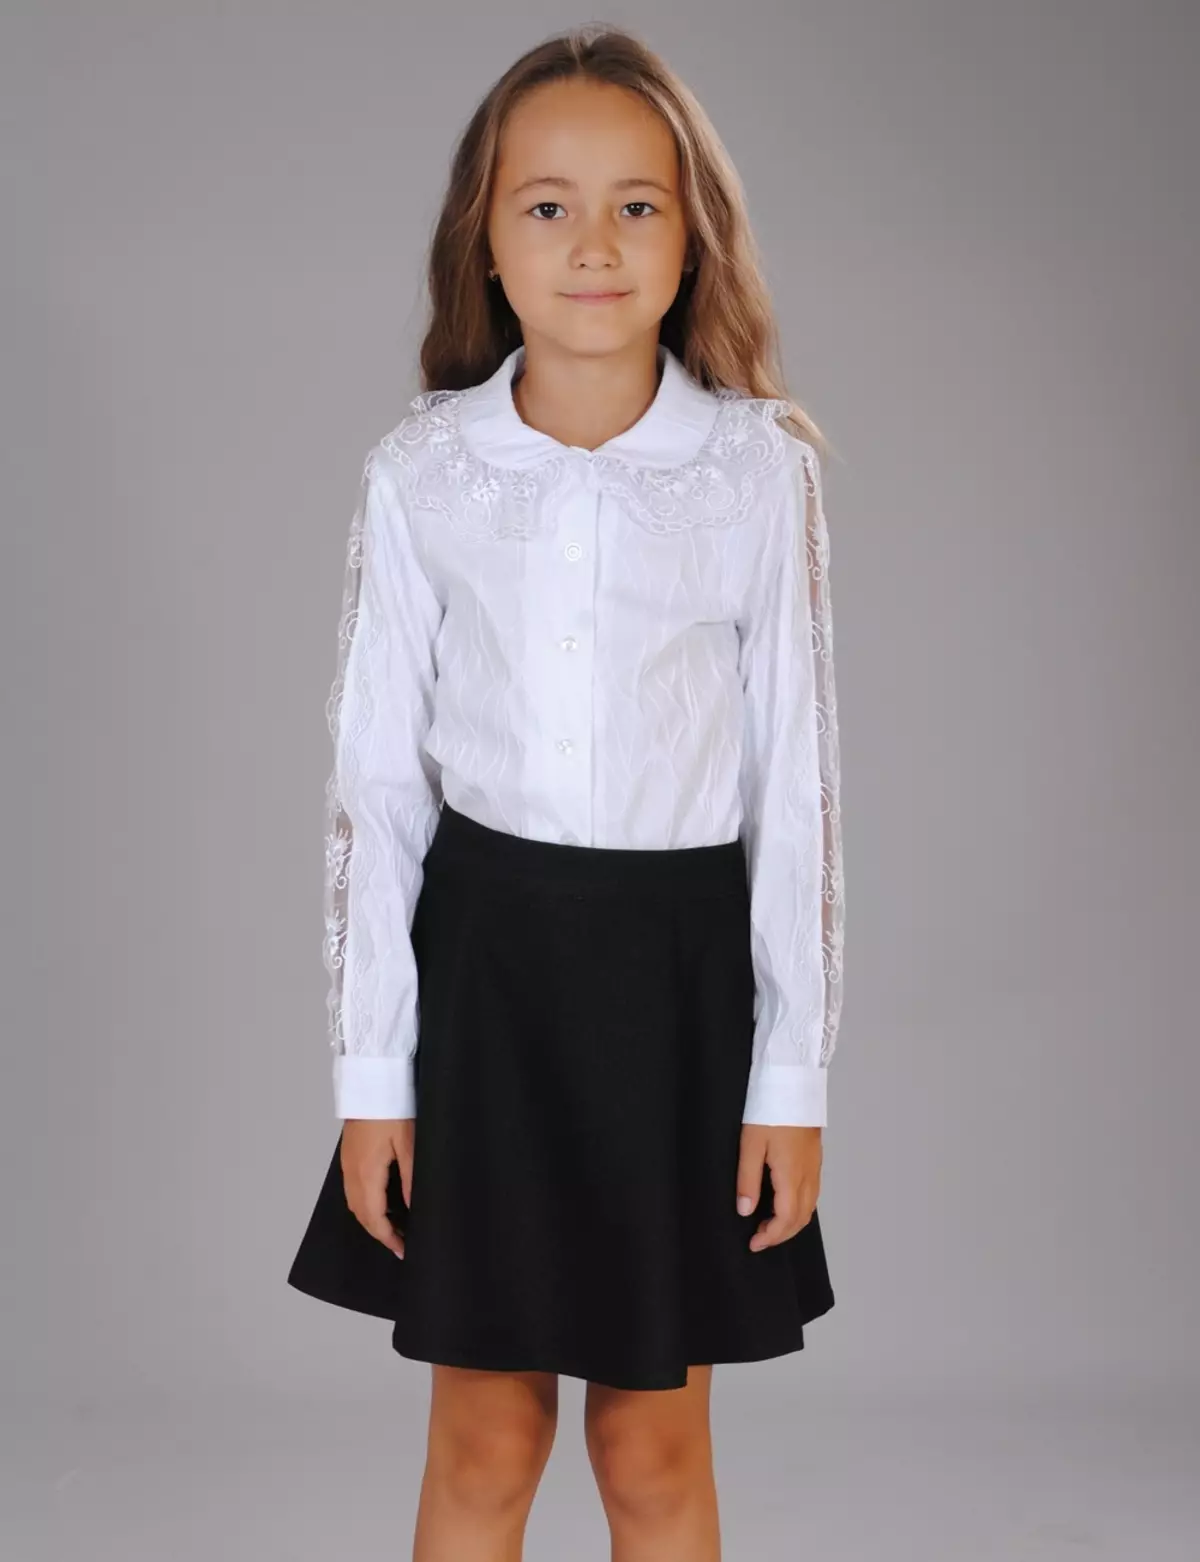 Cutie Susie (52 foto): uniforme scolastica, abiti, costumi e altri indumenti per bambini per ragazze 7 anni, recensioni di prodotti 3792_13